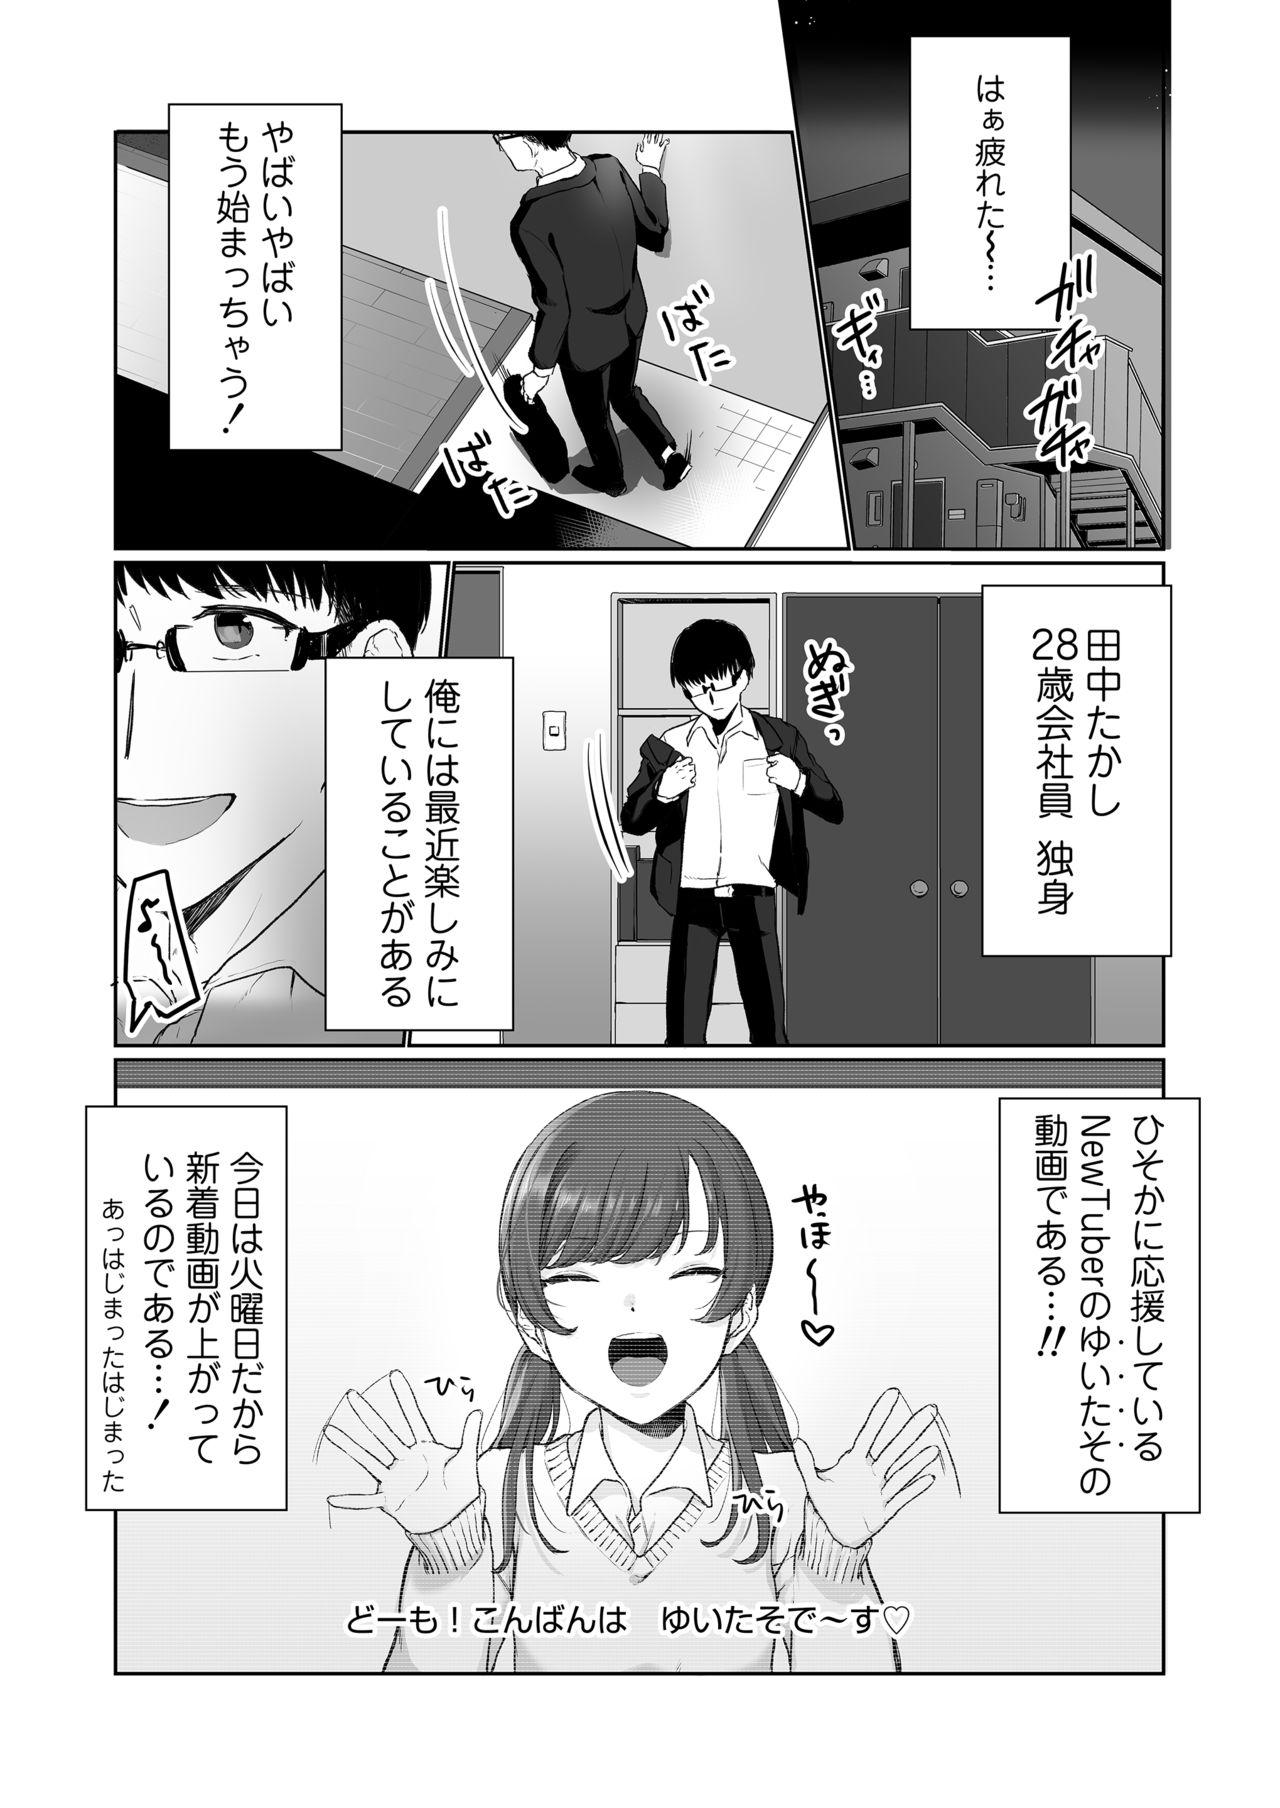 Dick Ninki JK Haishinsha no Ura no Kao - Original Sexteen - Page 2